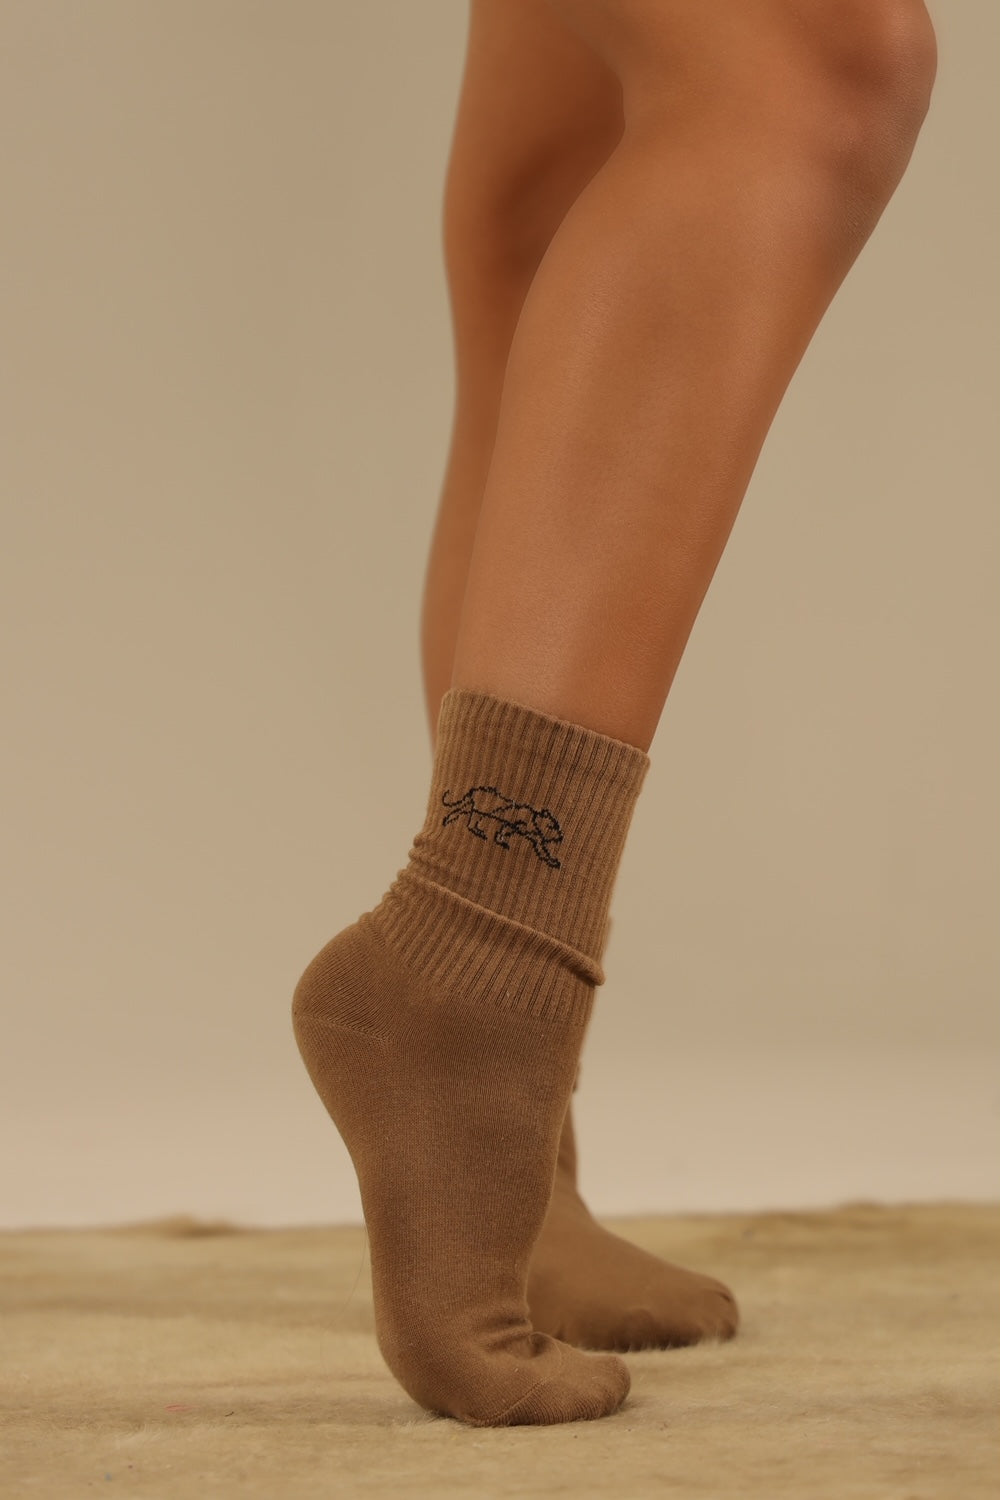  Bloch Dance Socks